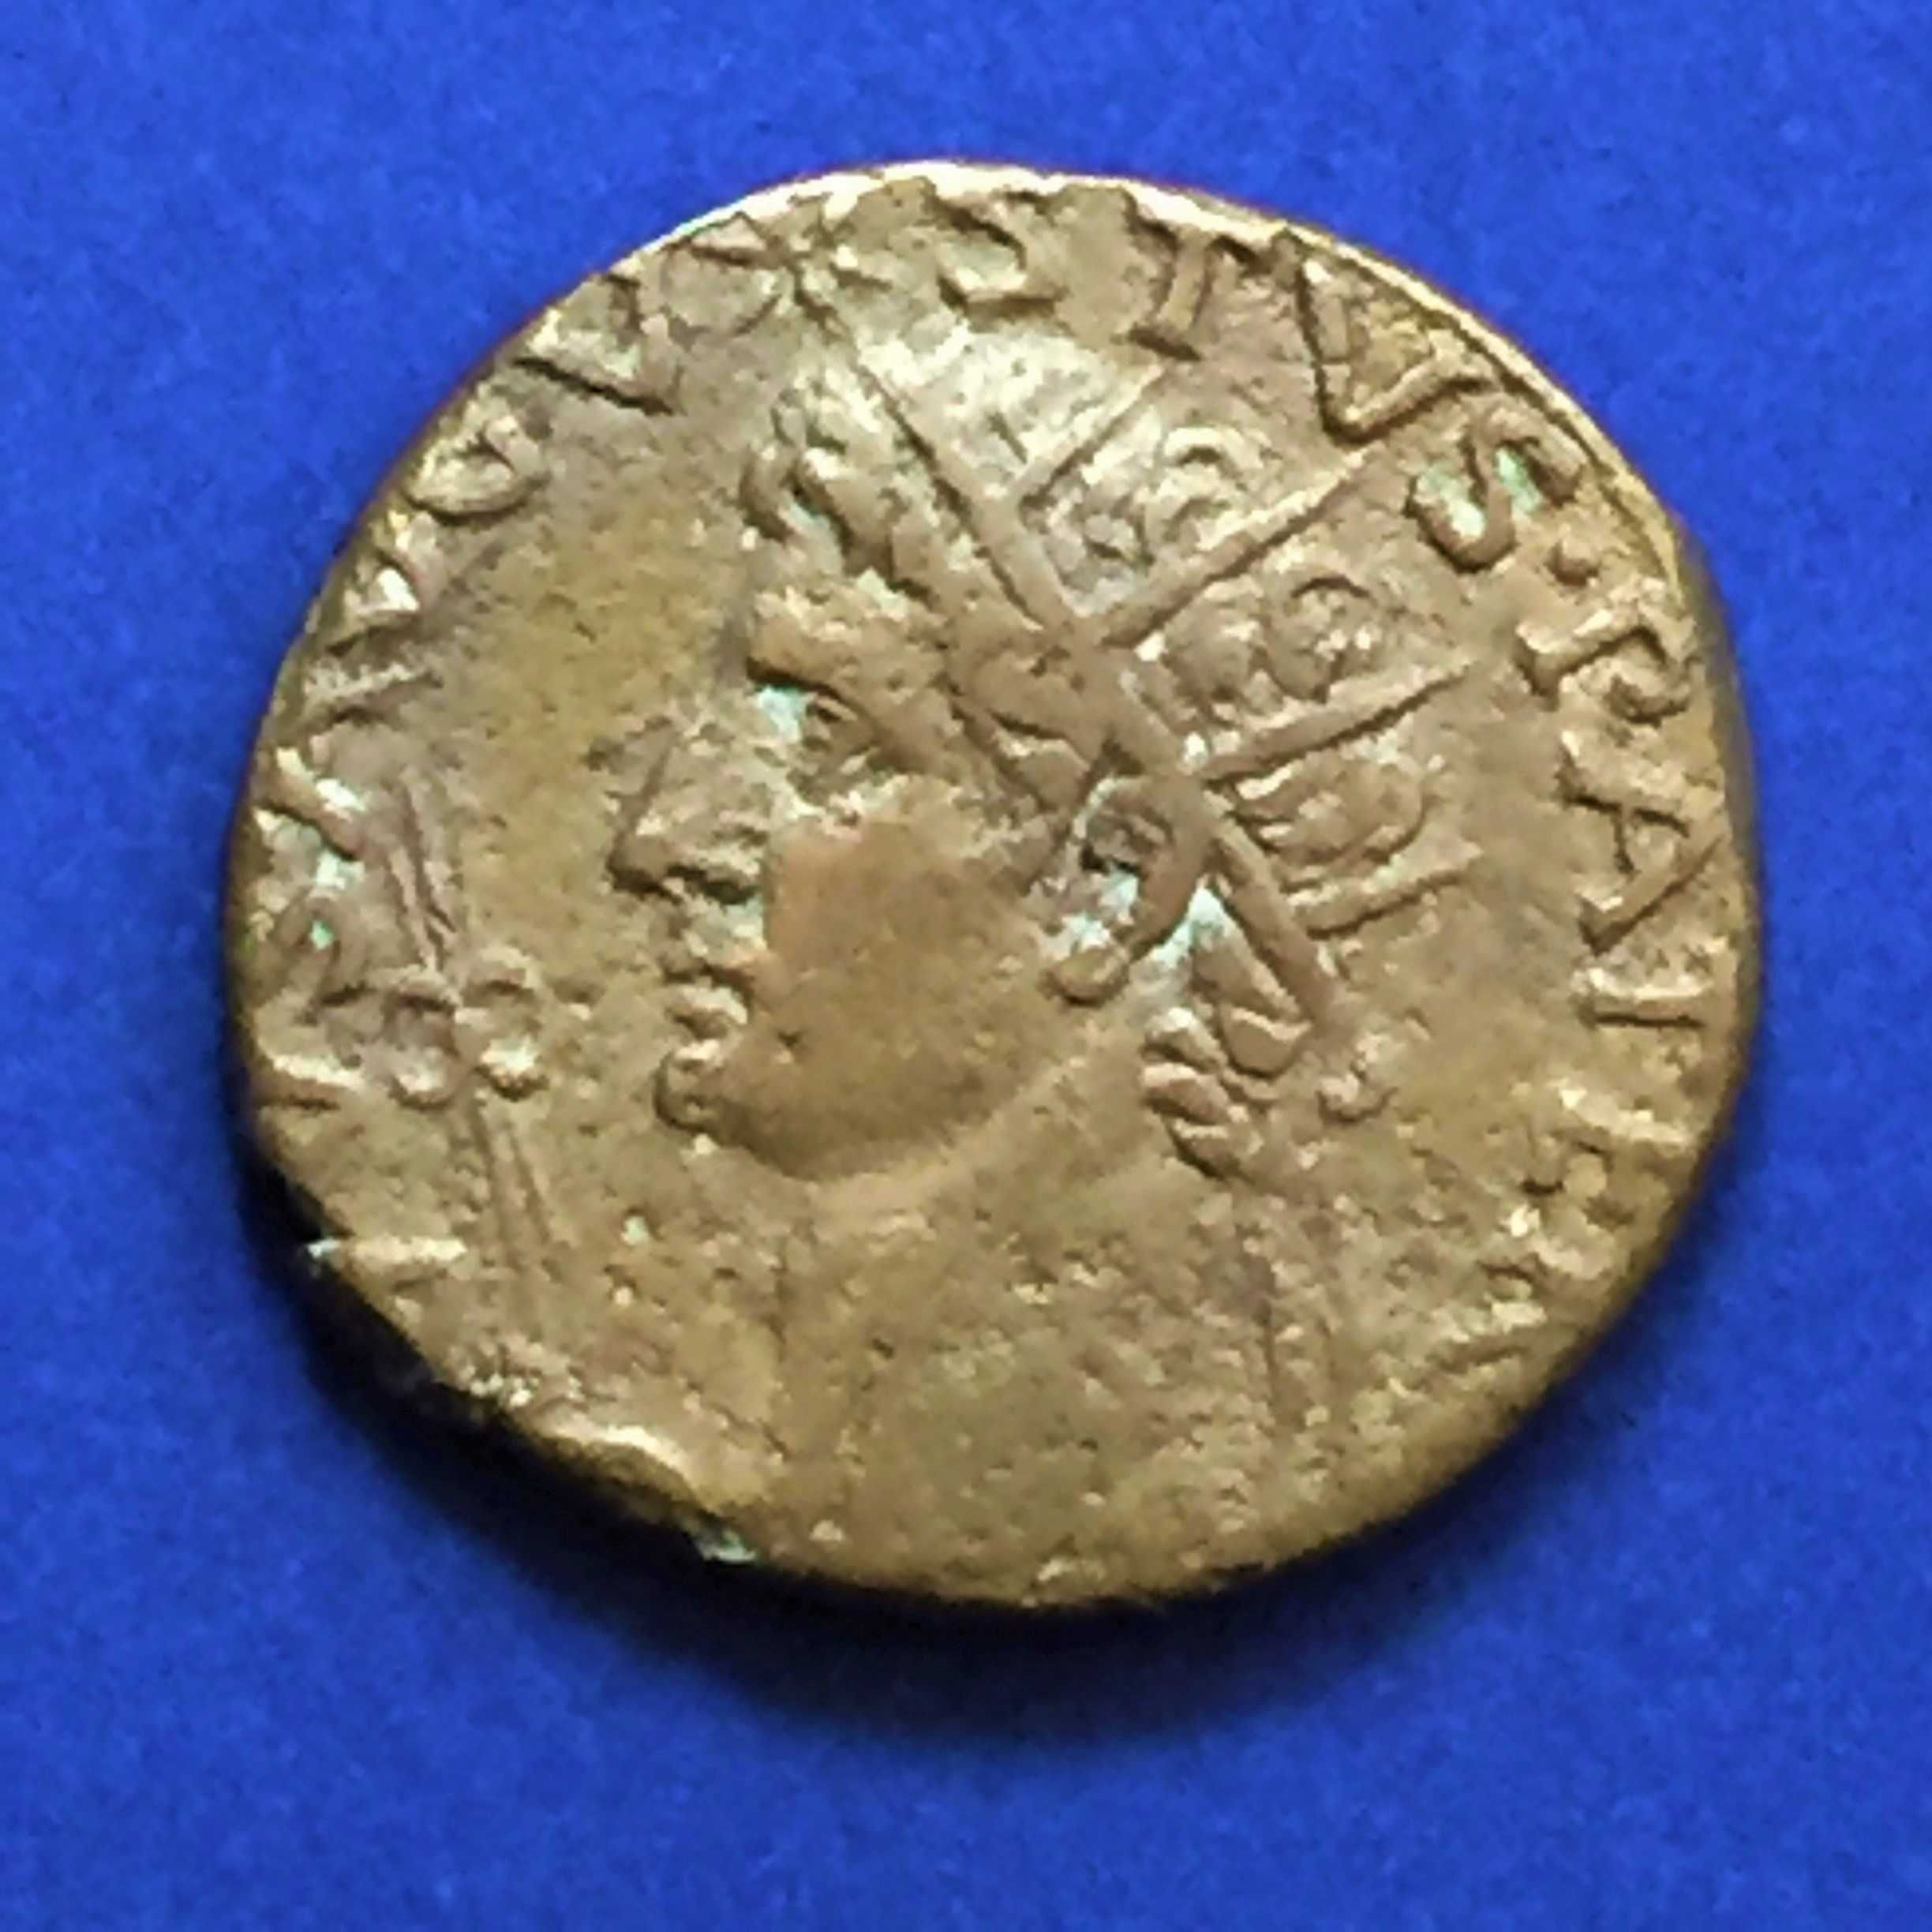 moeda romana AUGUSTO -Asse, Roma 15-16 D.C.,RIC 72-cobre-PORTES GRÁTIS